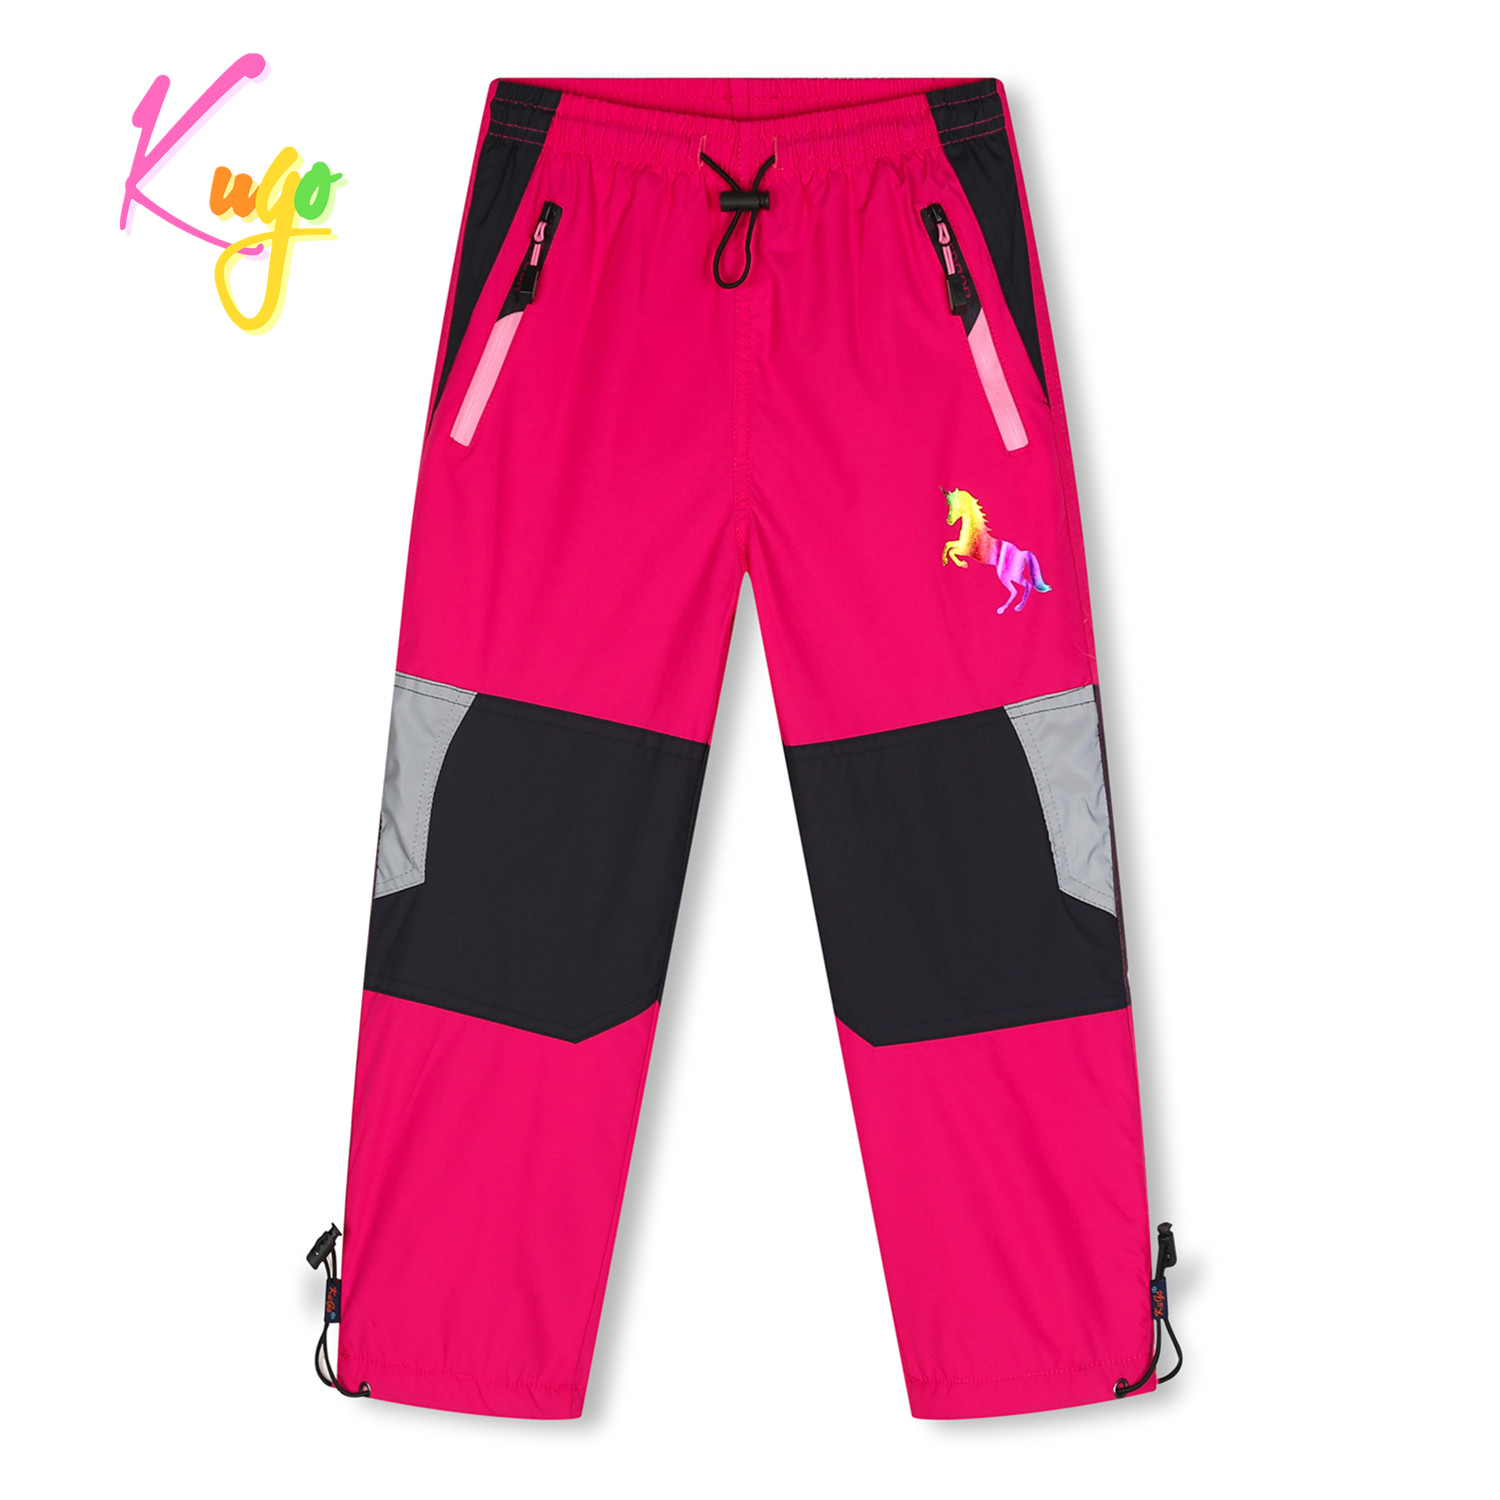 Dívčí šusťákové kalhoty, zateplené - KUGO DK7128, růžová Barva: Růžová, Velikost: 98